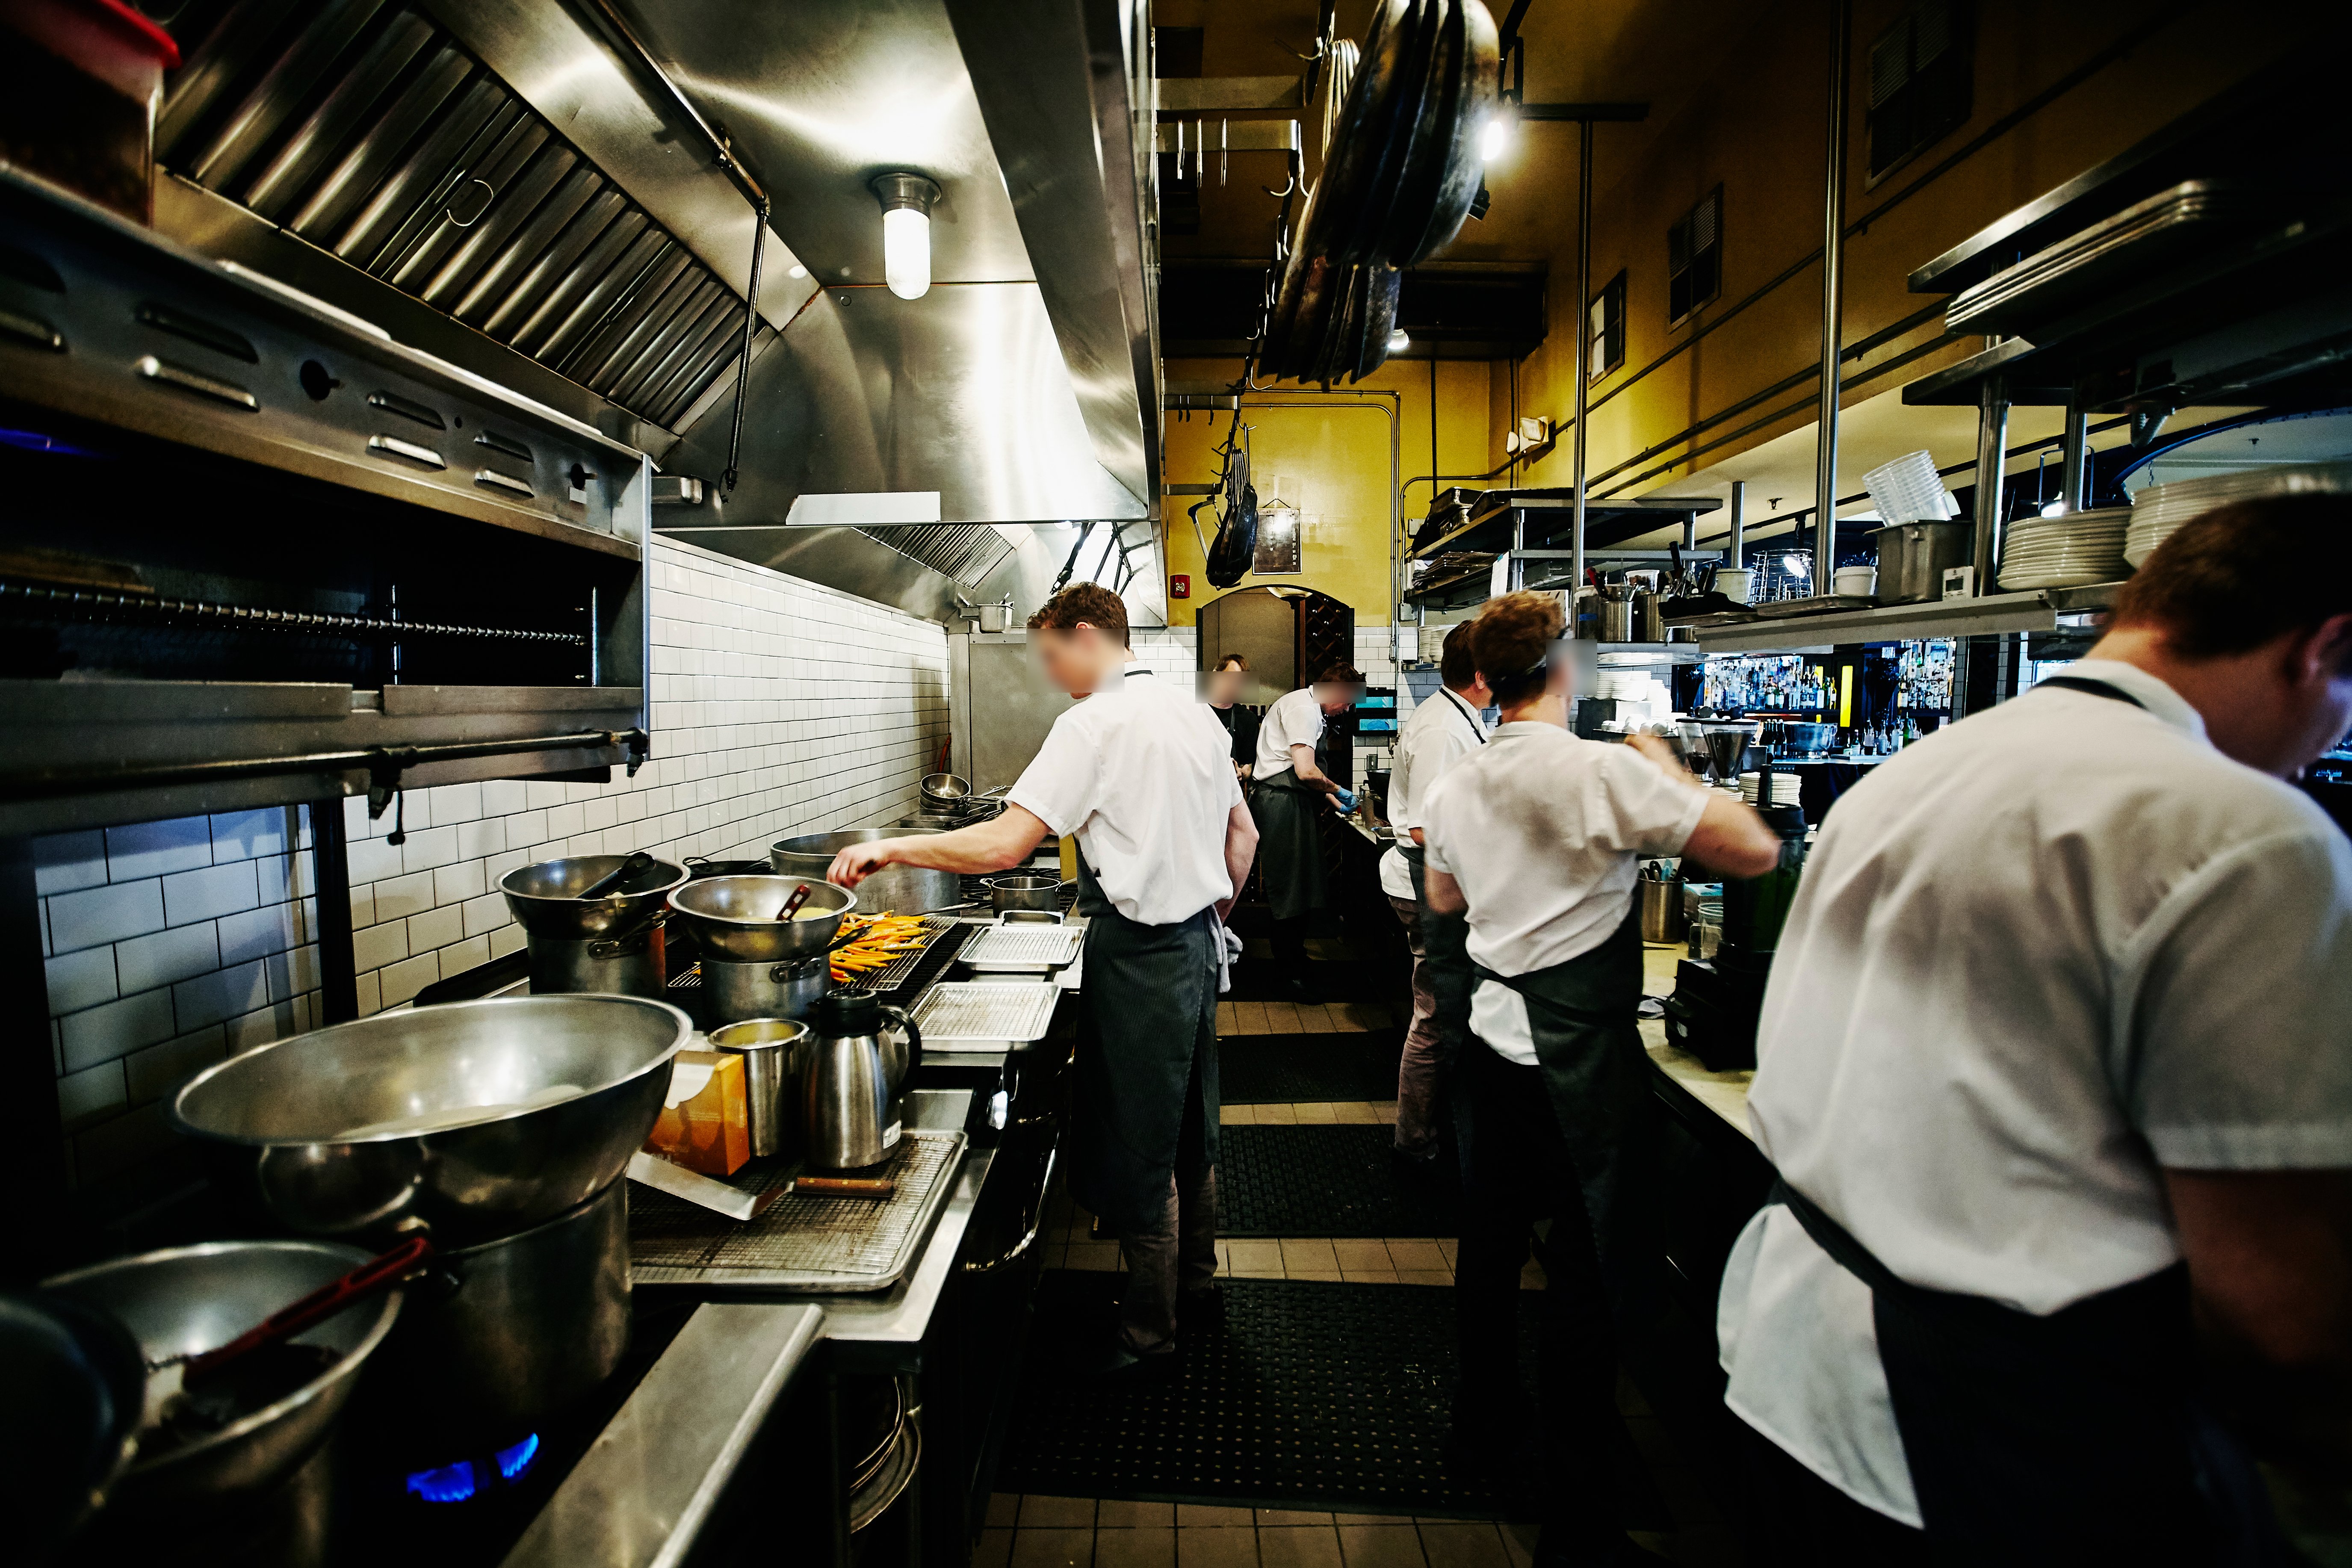 En cuisine, les pratiques des chefs sont parfois très controversées. (Illustration) iStockphoto/Getty Images/Thomas M. Barwick